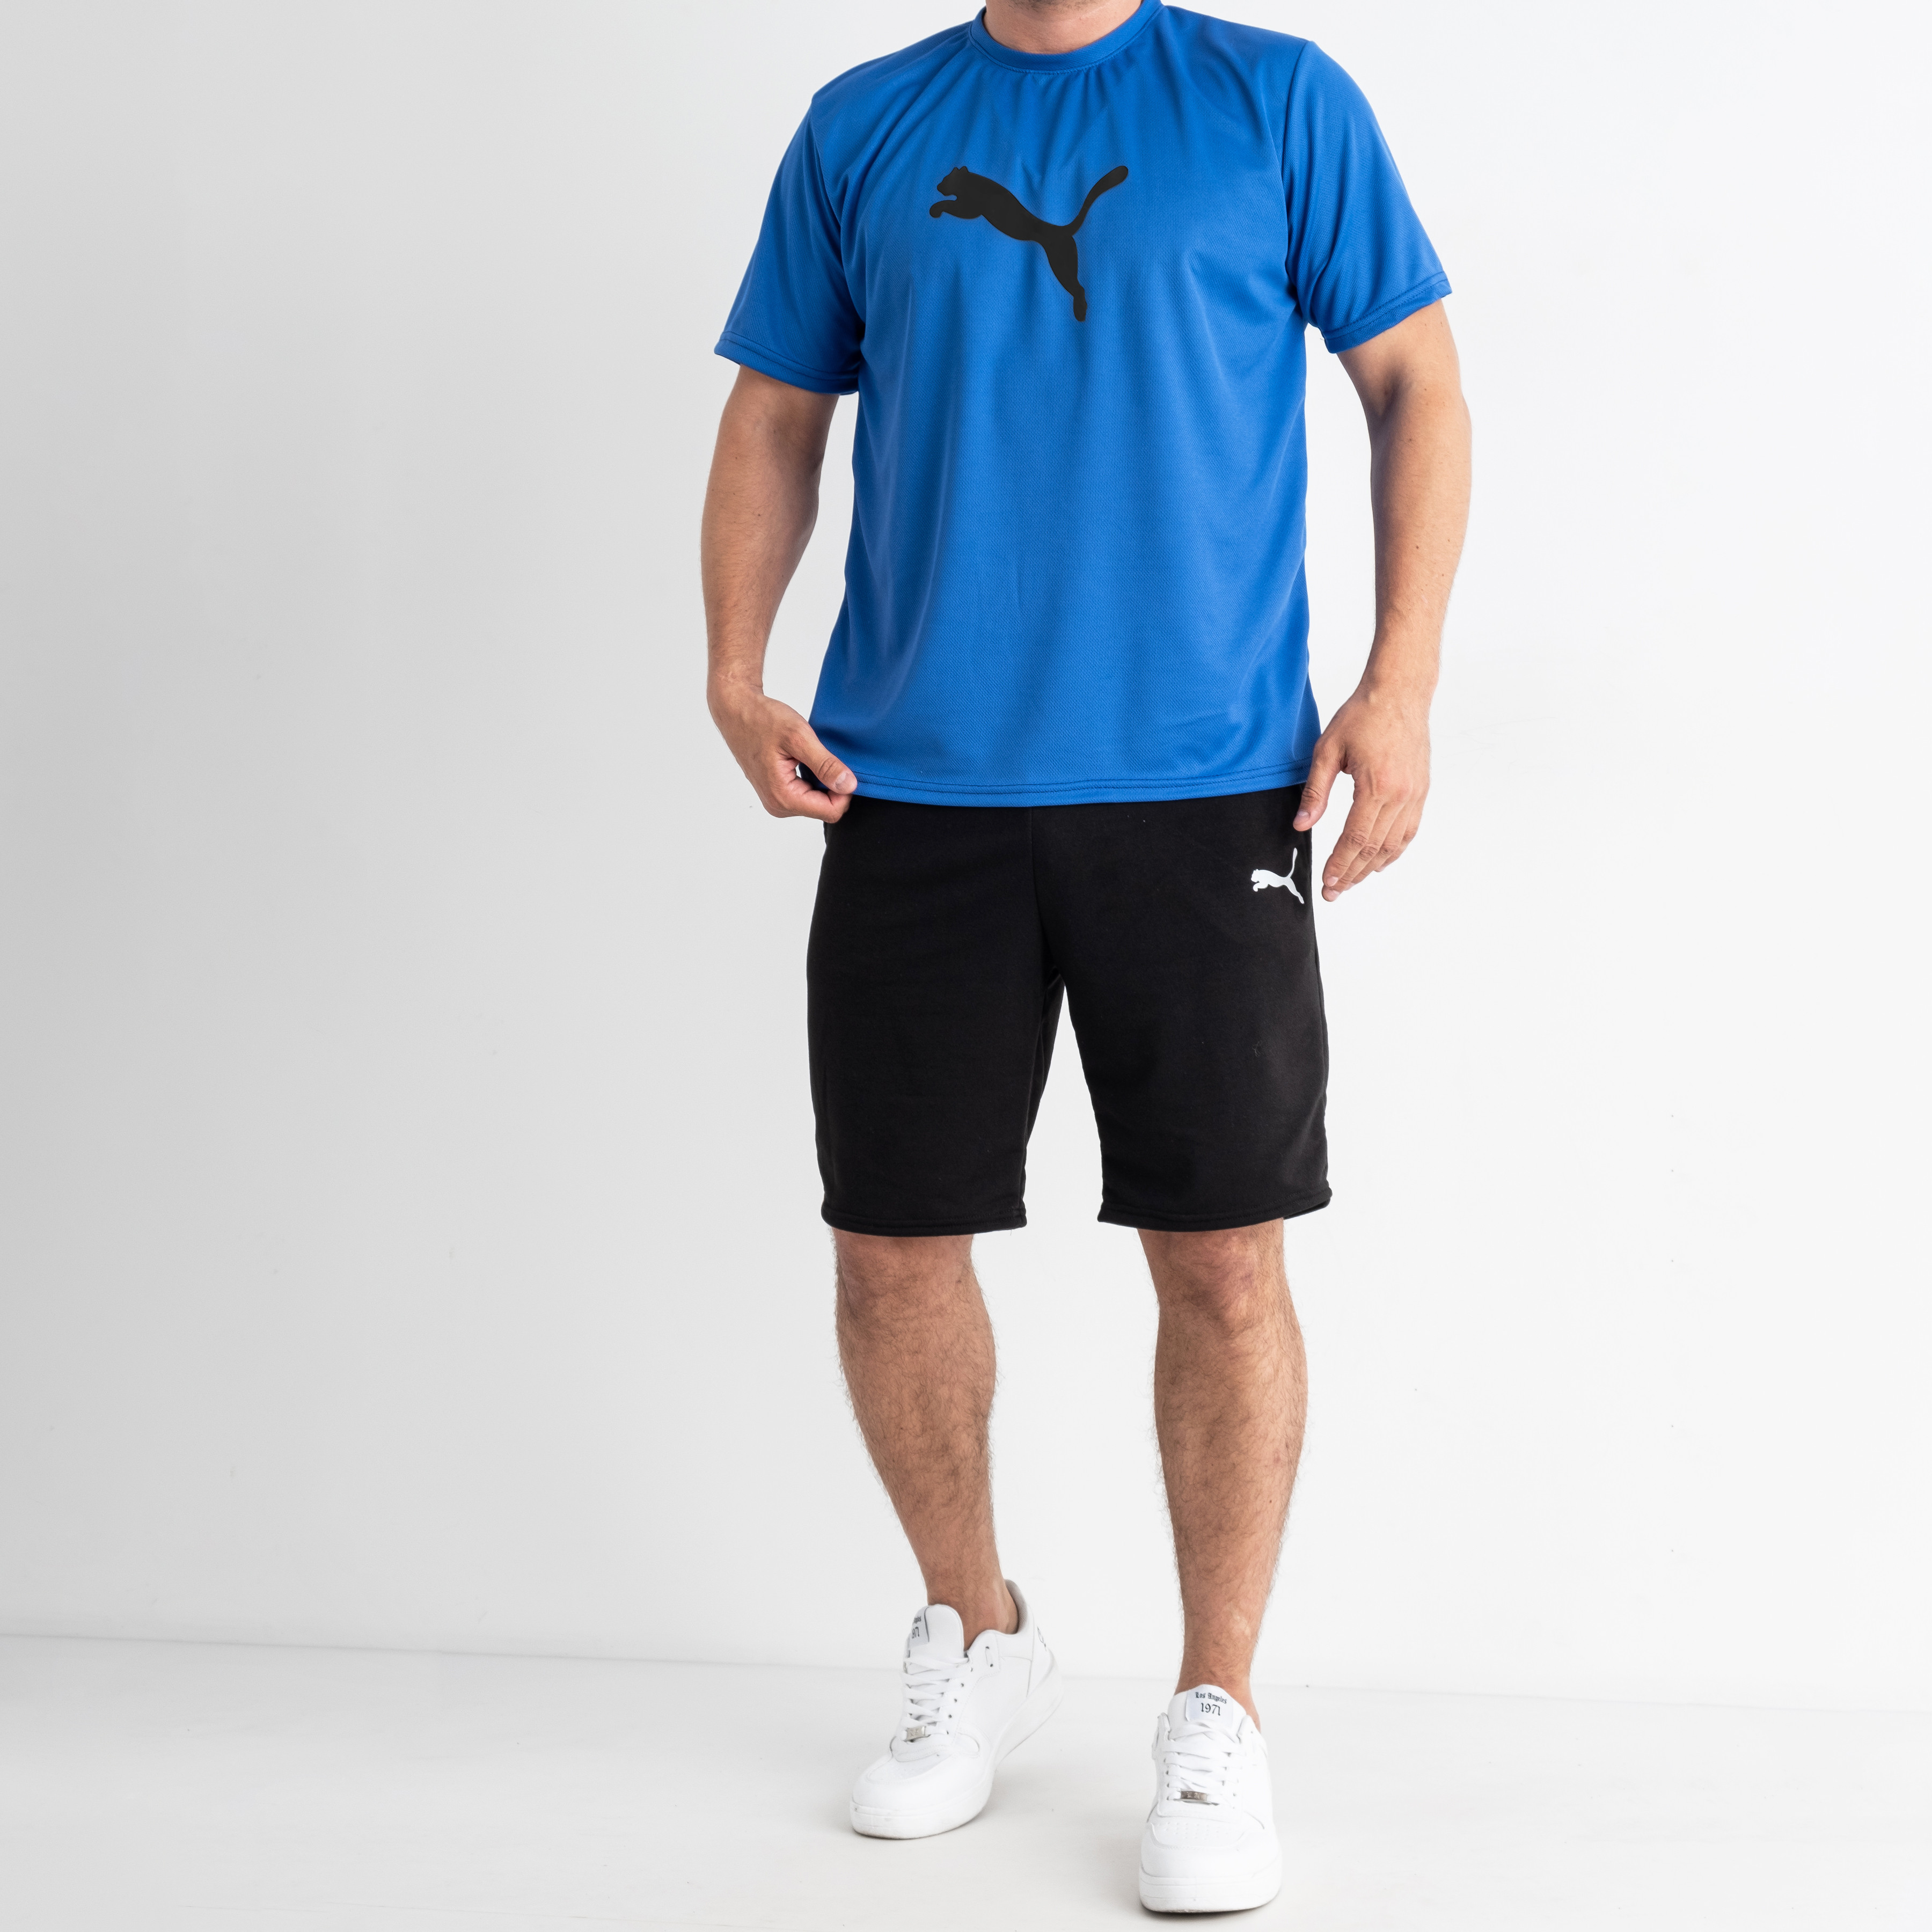 3365-25 СИНИЙ спортивный костюм мужской (футболка + шорты) С ЧЁРНЫМ ПРИНТОМ (5 ед. размеры: M.L.XL.2XL.3XL)